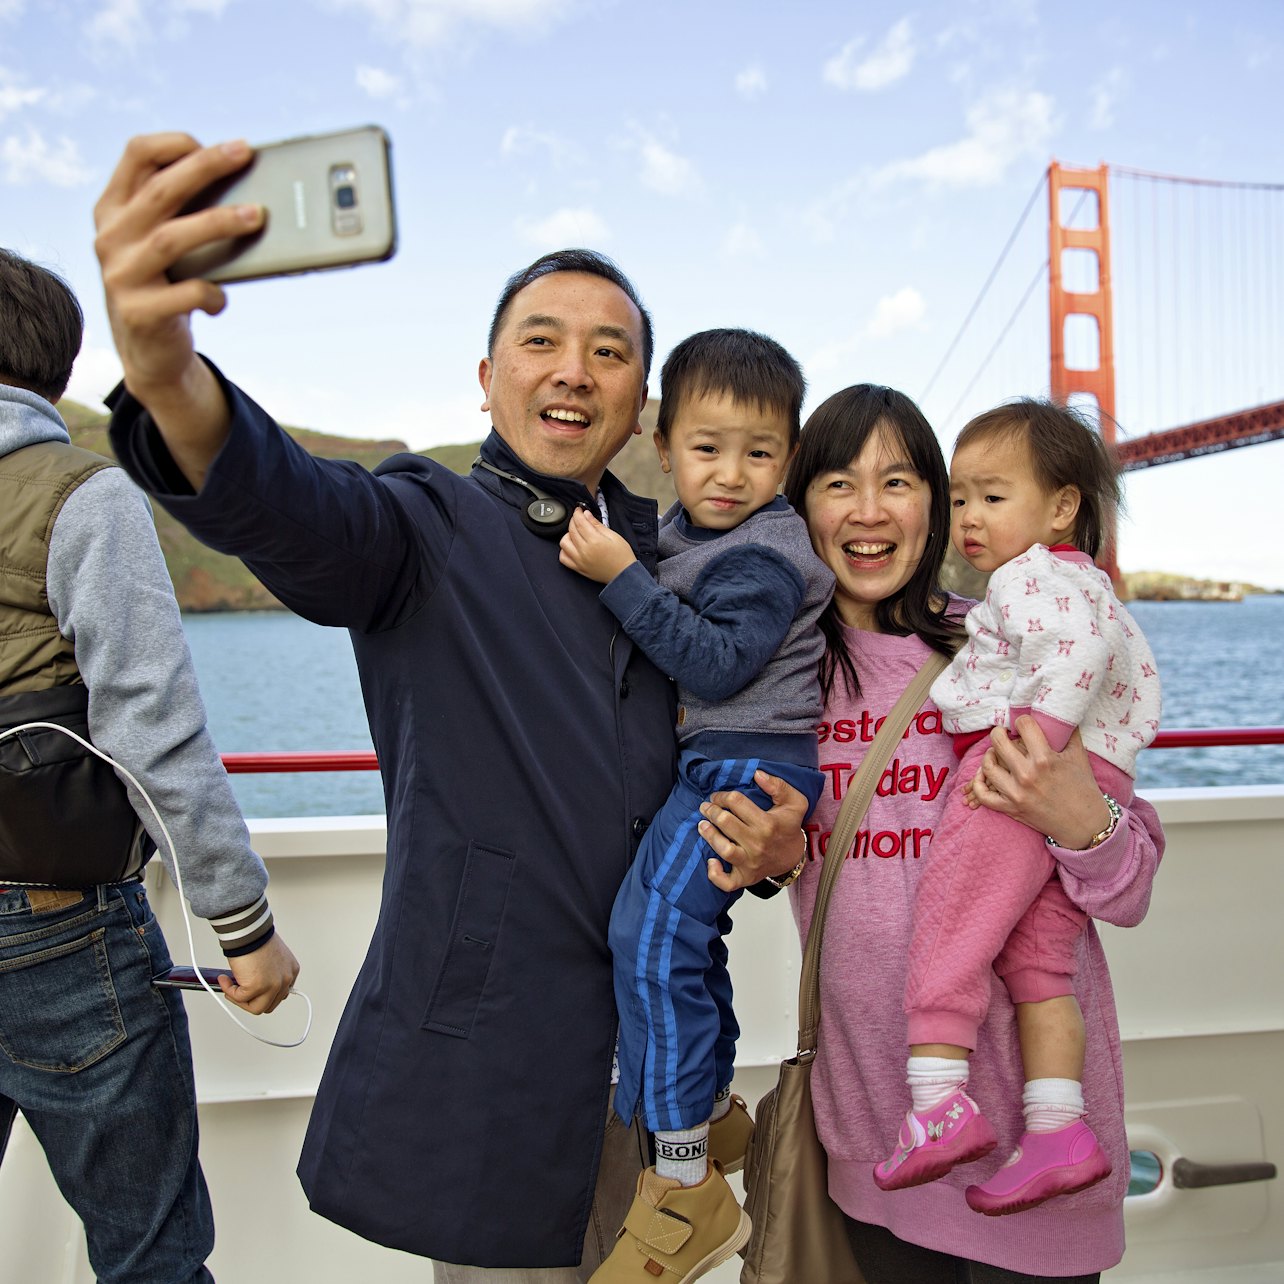 São Francisco: Ponte de 1,5 horas 2 Bridge Cruise - Acomodações em São Francisco